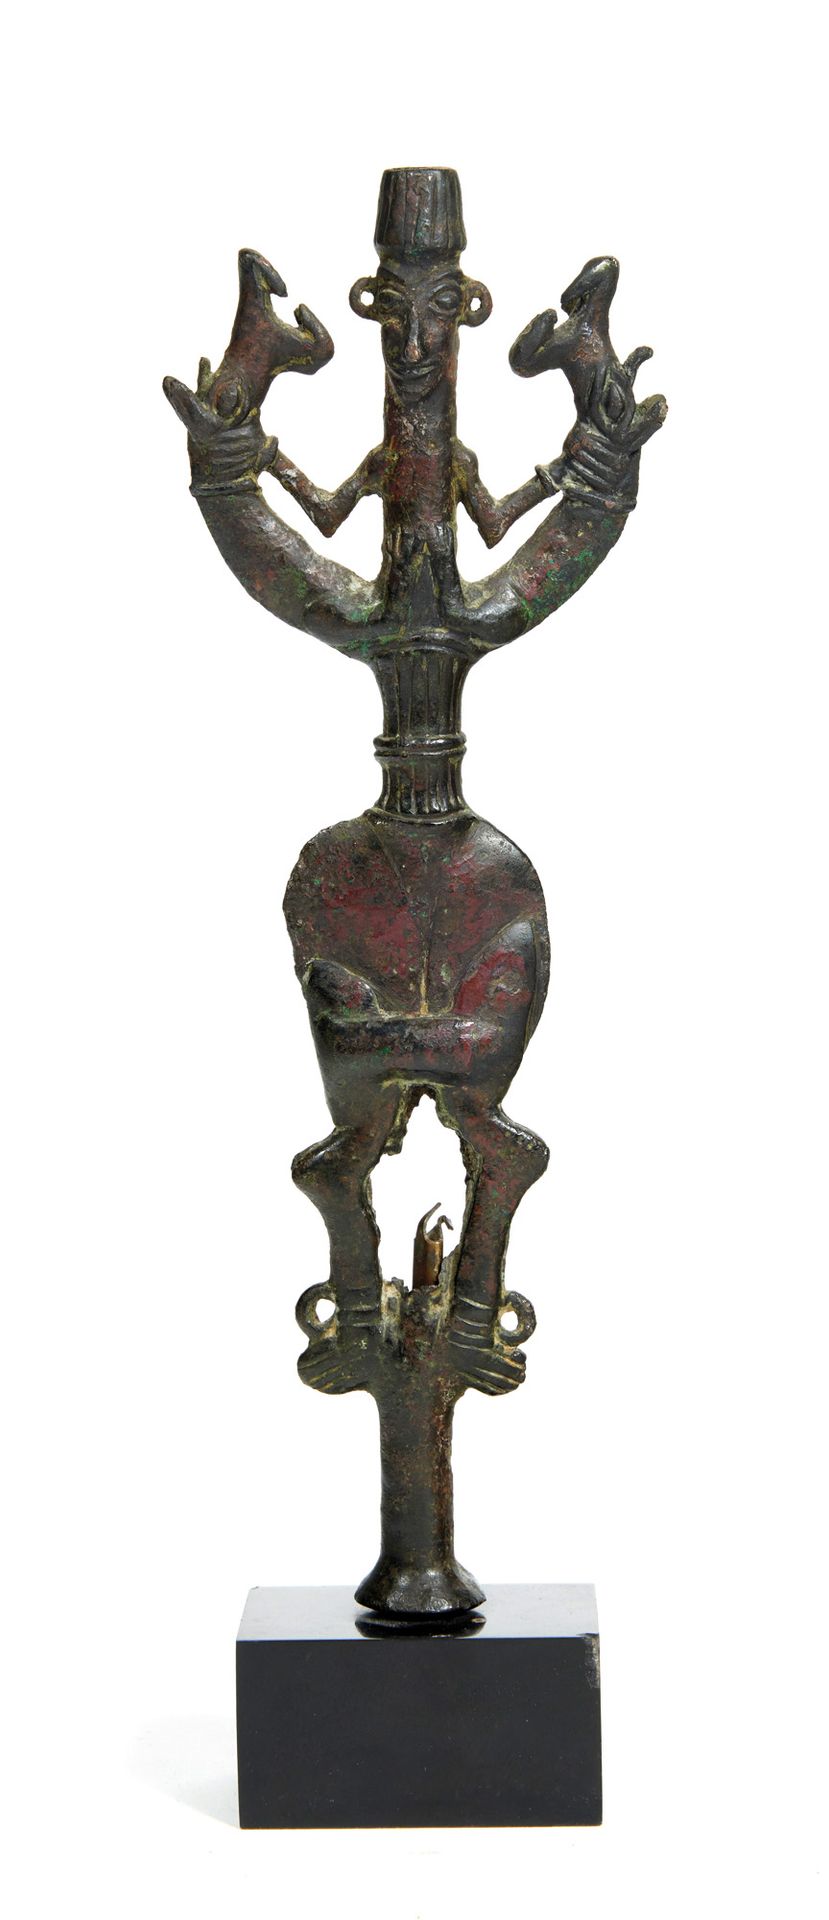 Idole porte-épingle au Maître des animaux janiforme. 带针的偶像，其形式为janiform动物主人。

青铜&hellip;